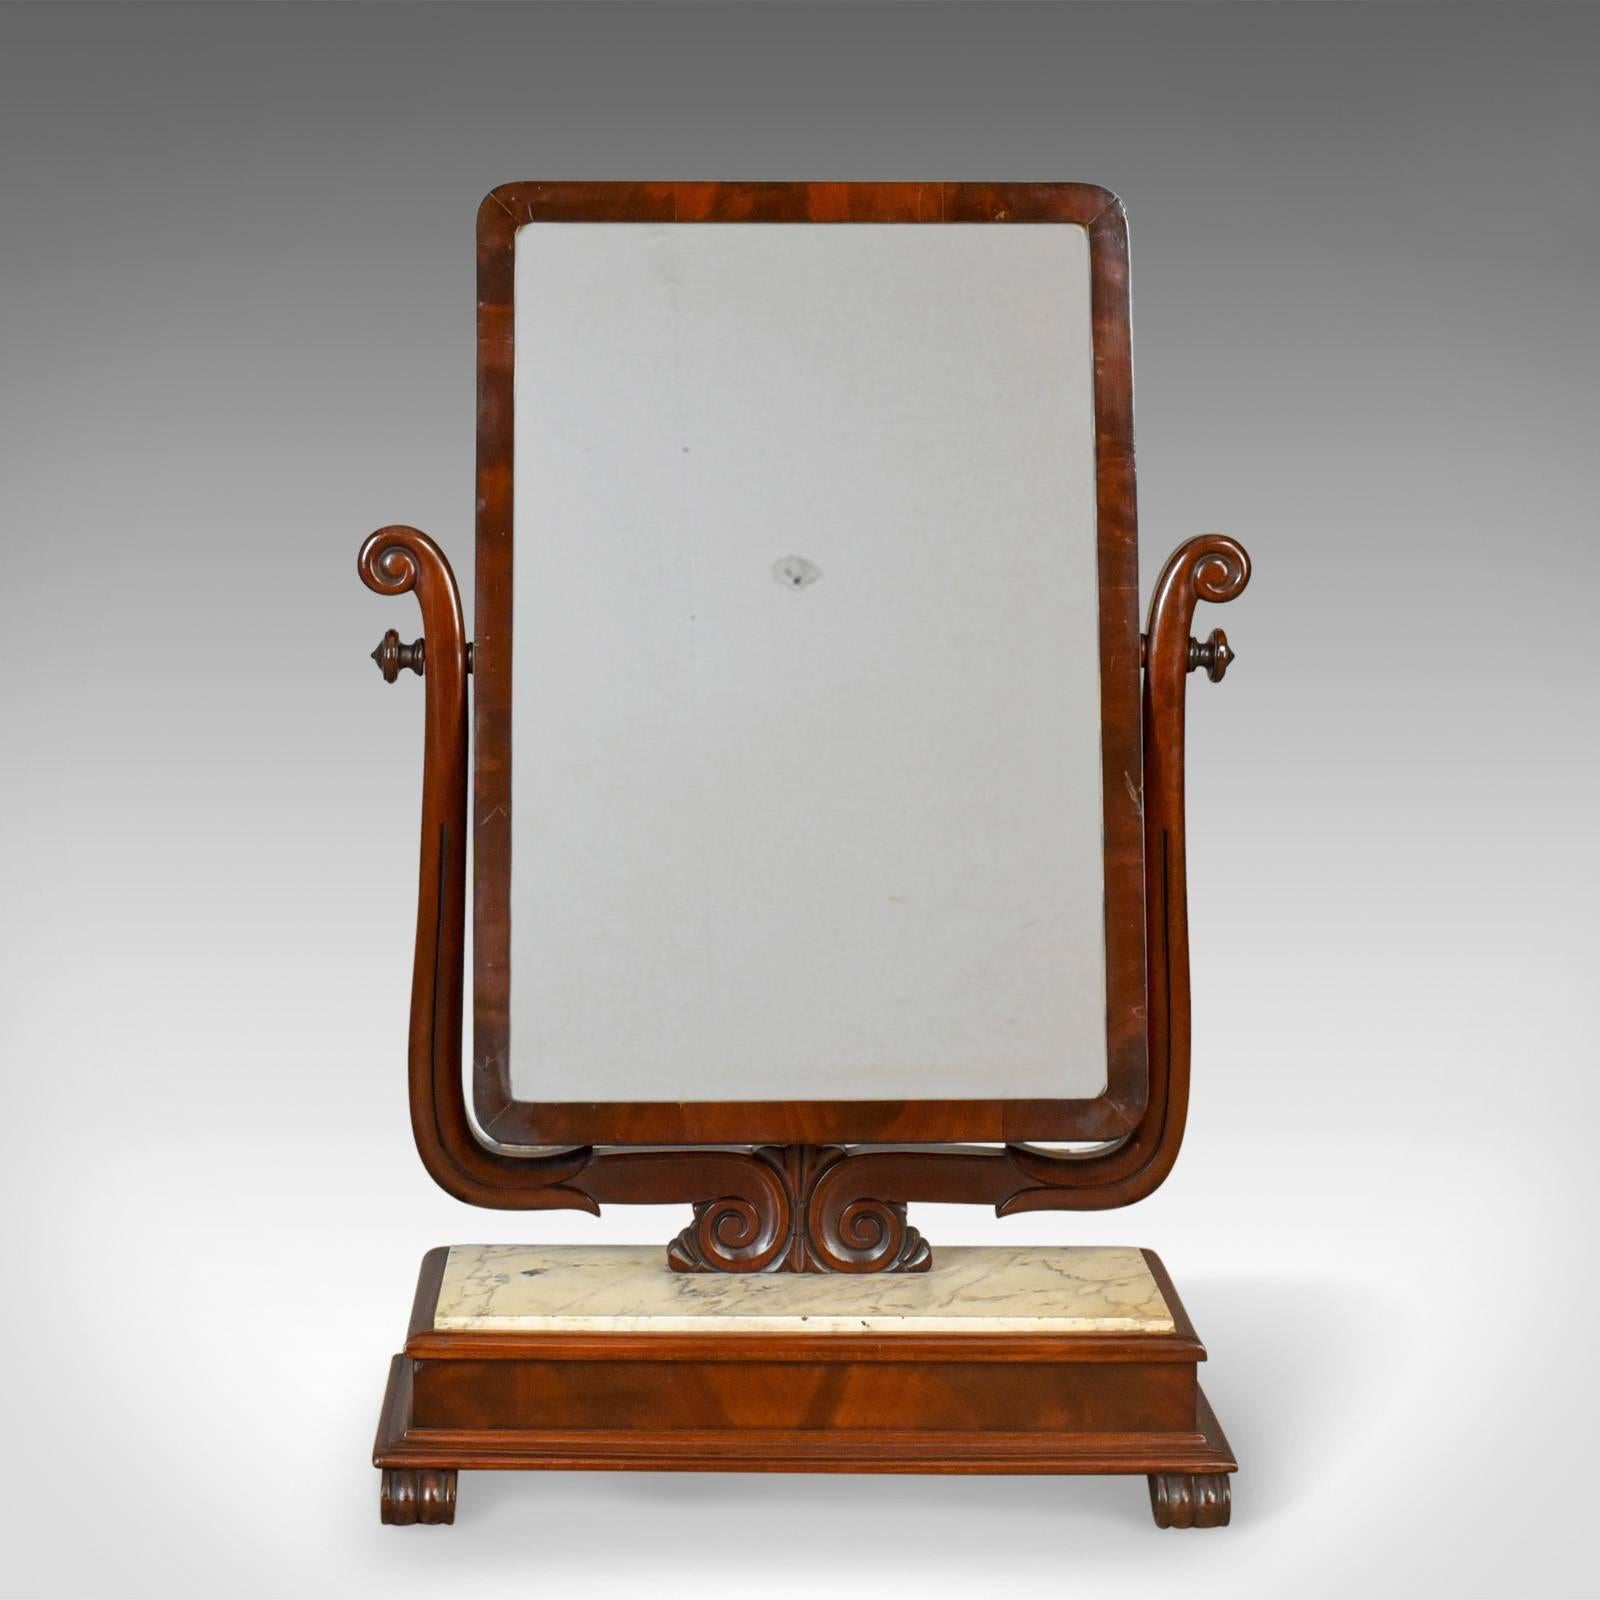 Il s'agit d'un grand miroir antique de vanité, un miroir de toilette ou de swing, anglais, victorien avec un socle en marbre datant d'environ 1850.

Un magnifique et inhabituel exemple de miroir de coiffeuse victorien
En acajou et complété par un